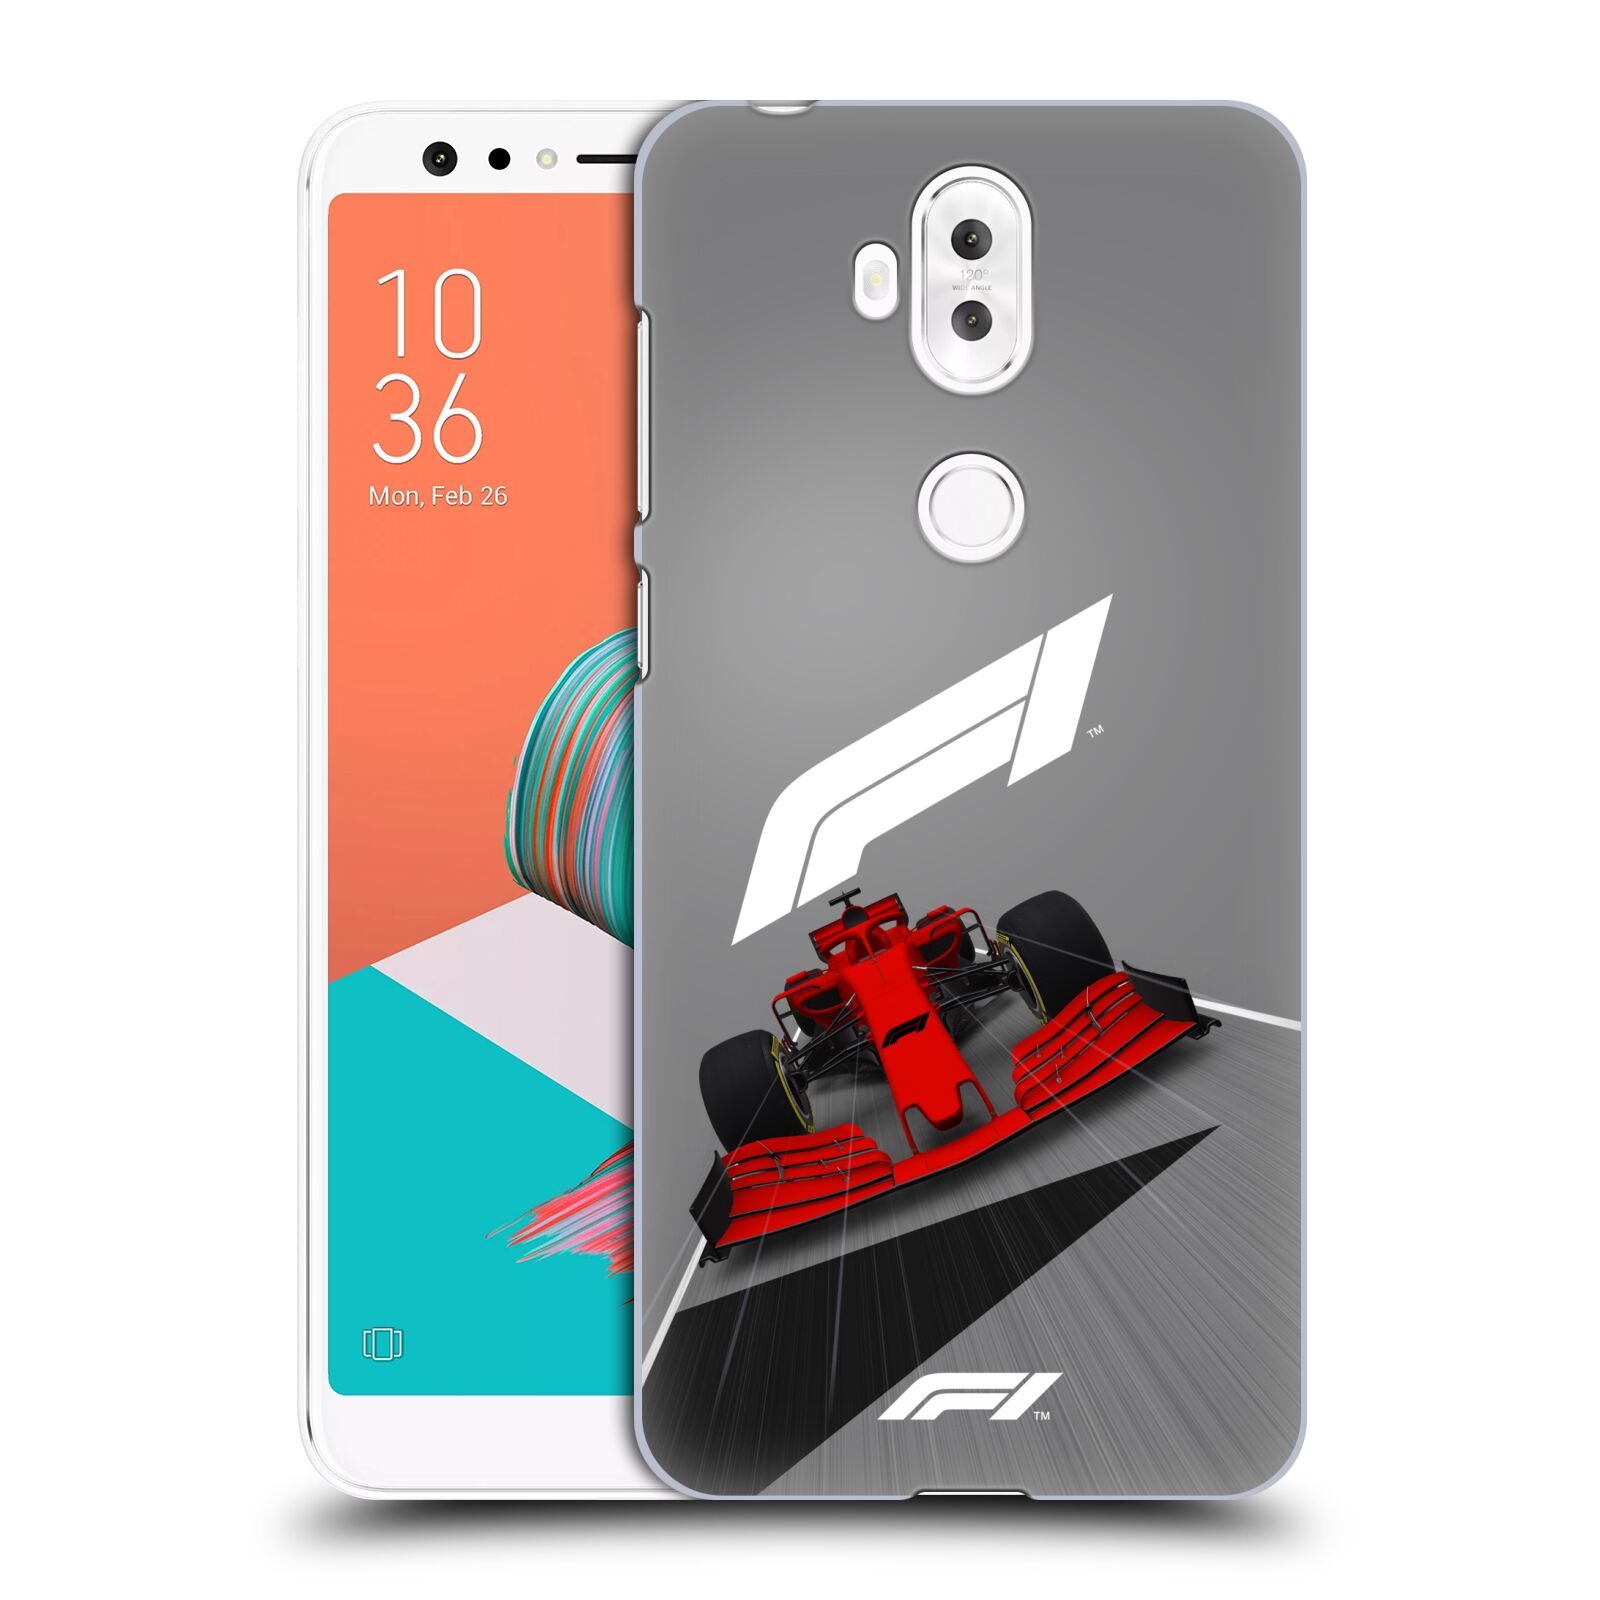 Zadní obal pro mobil Asus Zenfone 5 Lite ZC600KL - HEAD CASE - Formule 1 - Červená